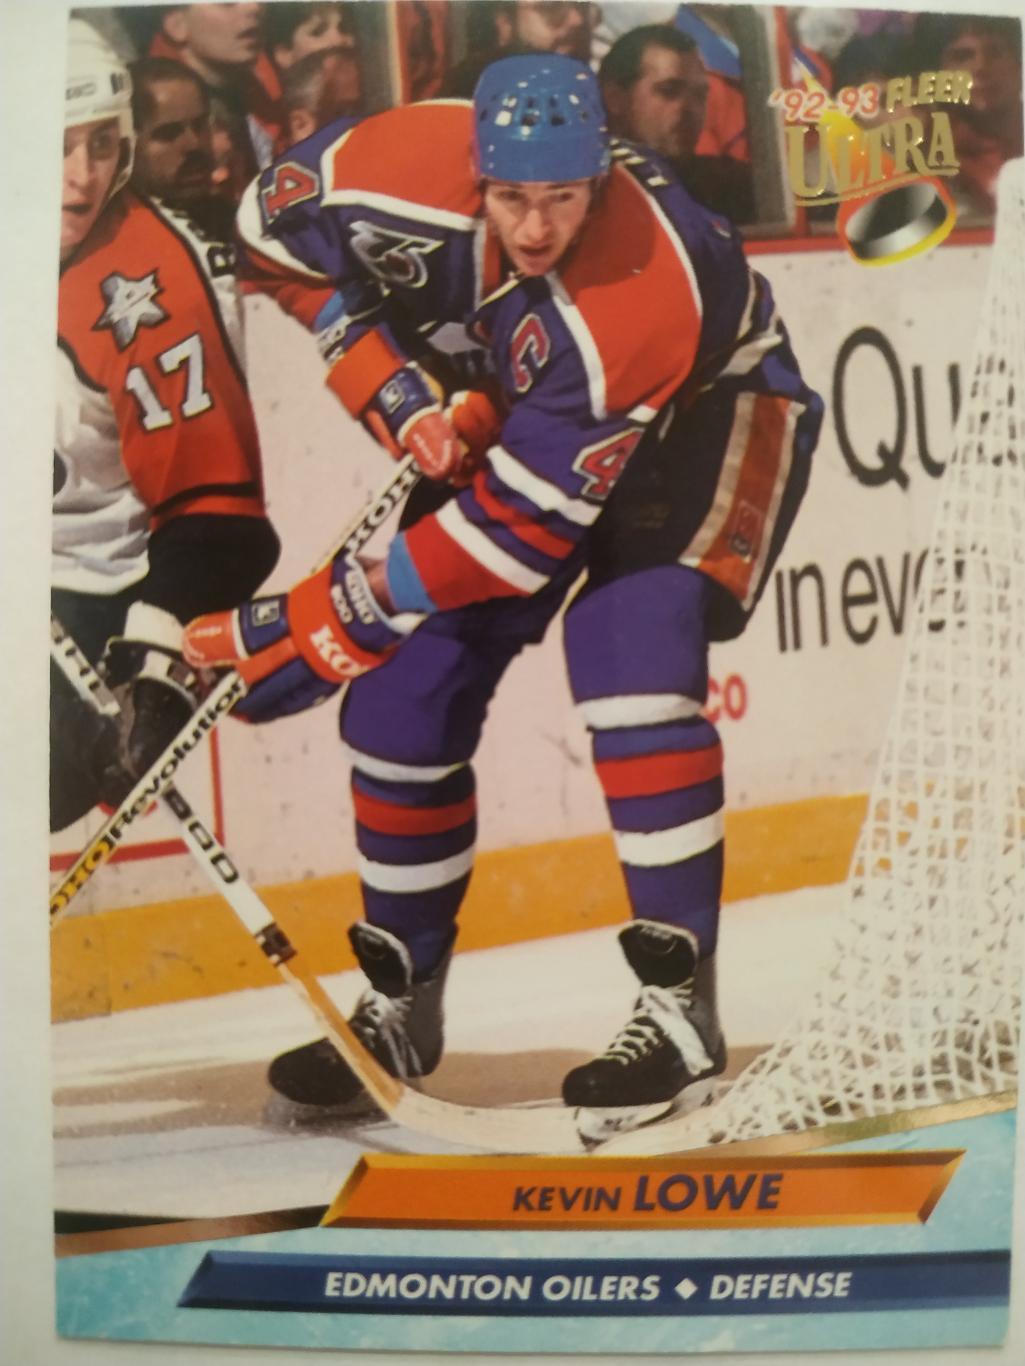 ХОККЕЙ КАРТОЧКА НХЛ FLEER ULTRA 1992-93 NHL KEVIN LOWE EDMONTON OILERS #60